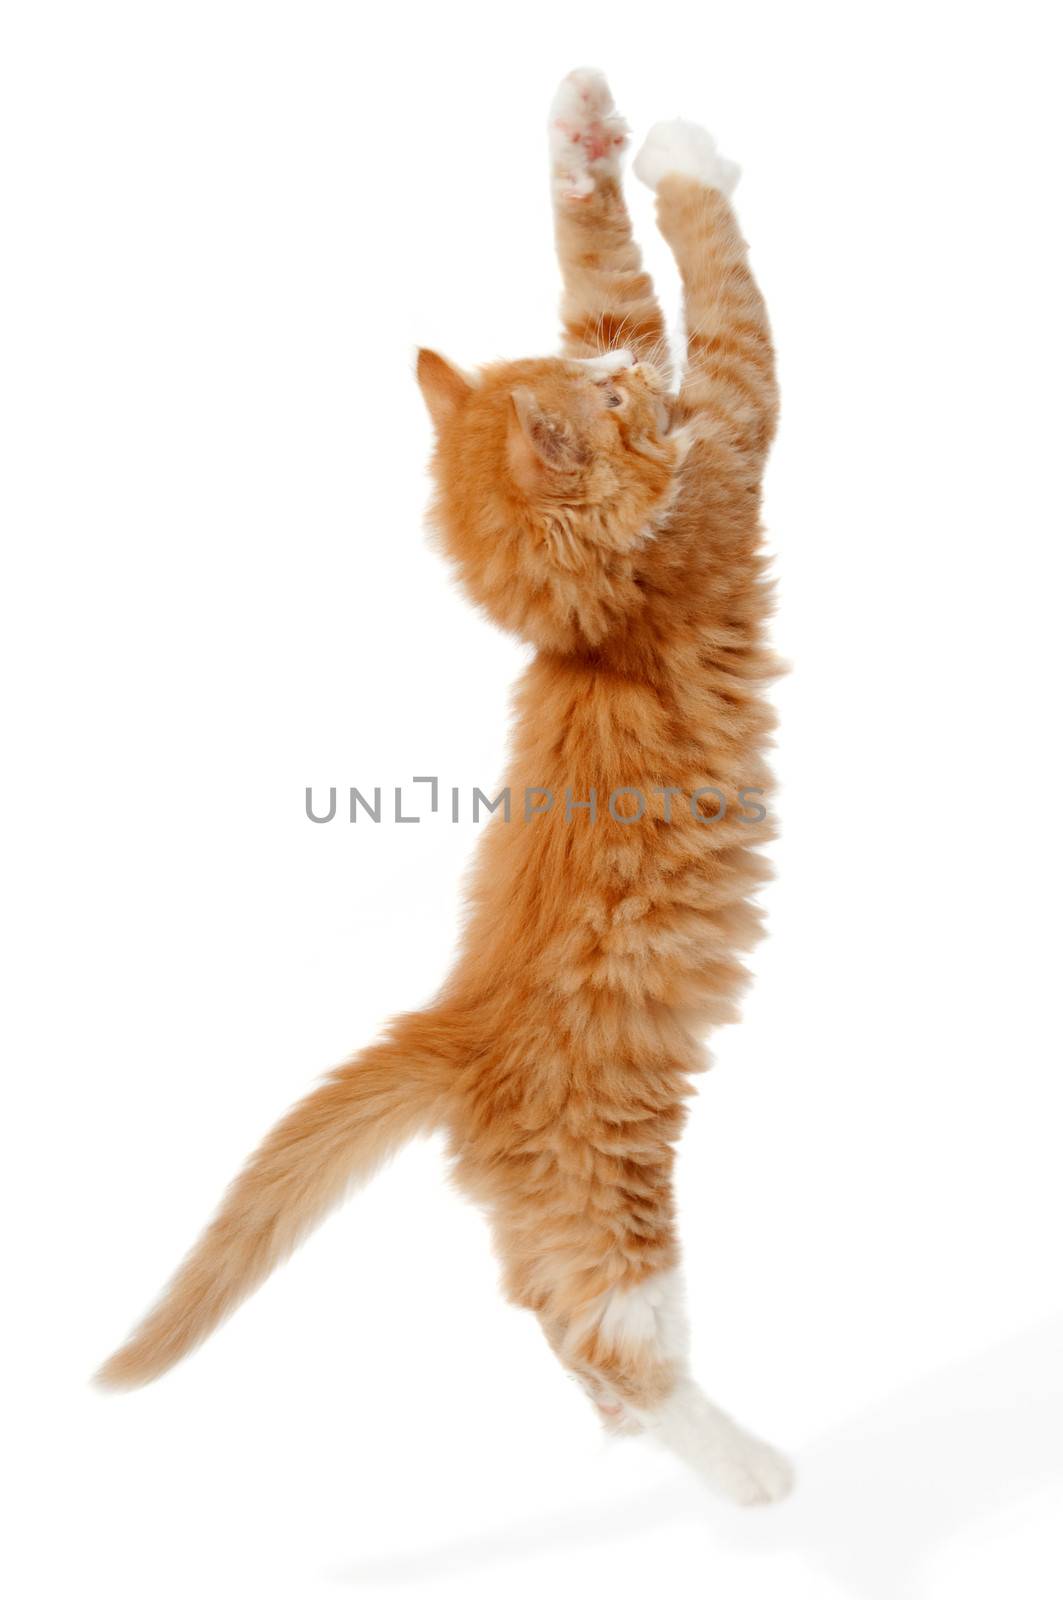 Jumping kitten by cfoto